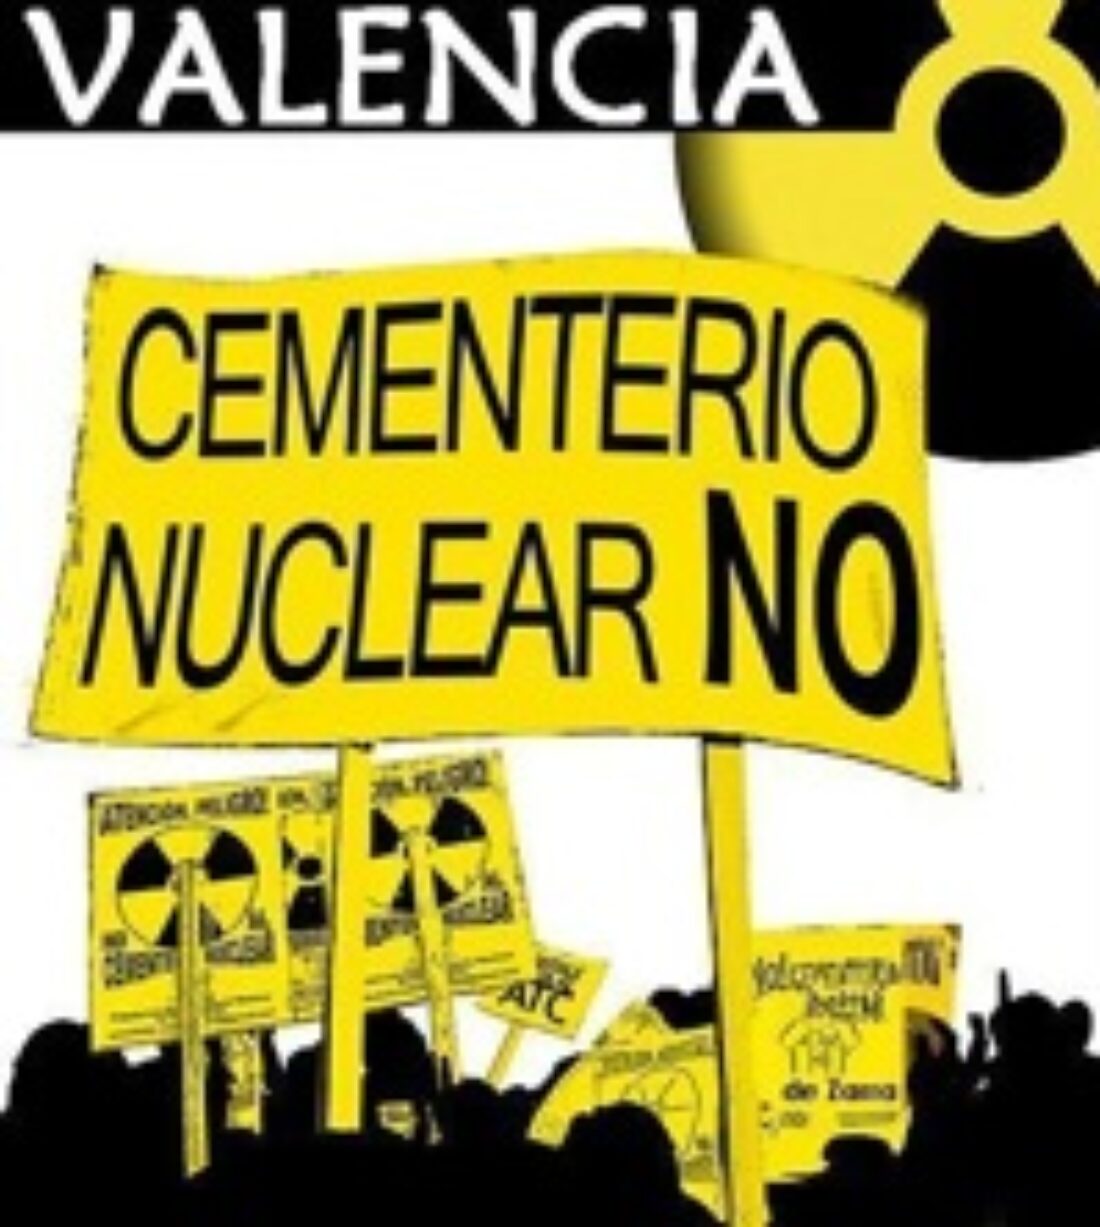 9 mayo, Valencia : Manifestación contra el ATC en Cofrentes